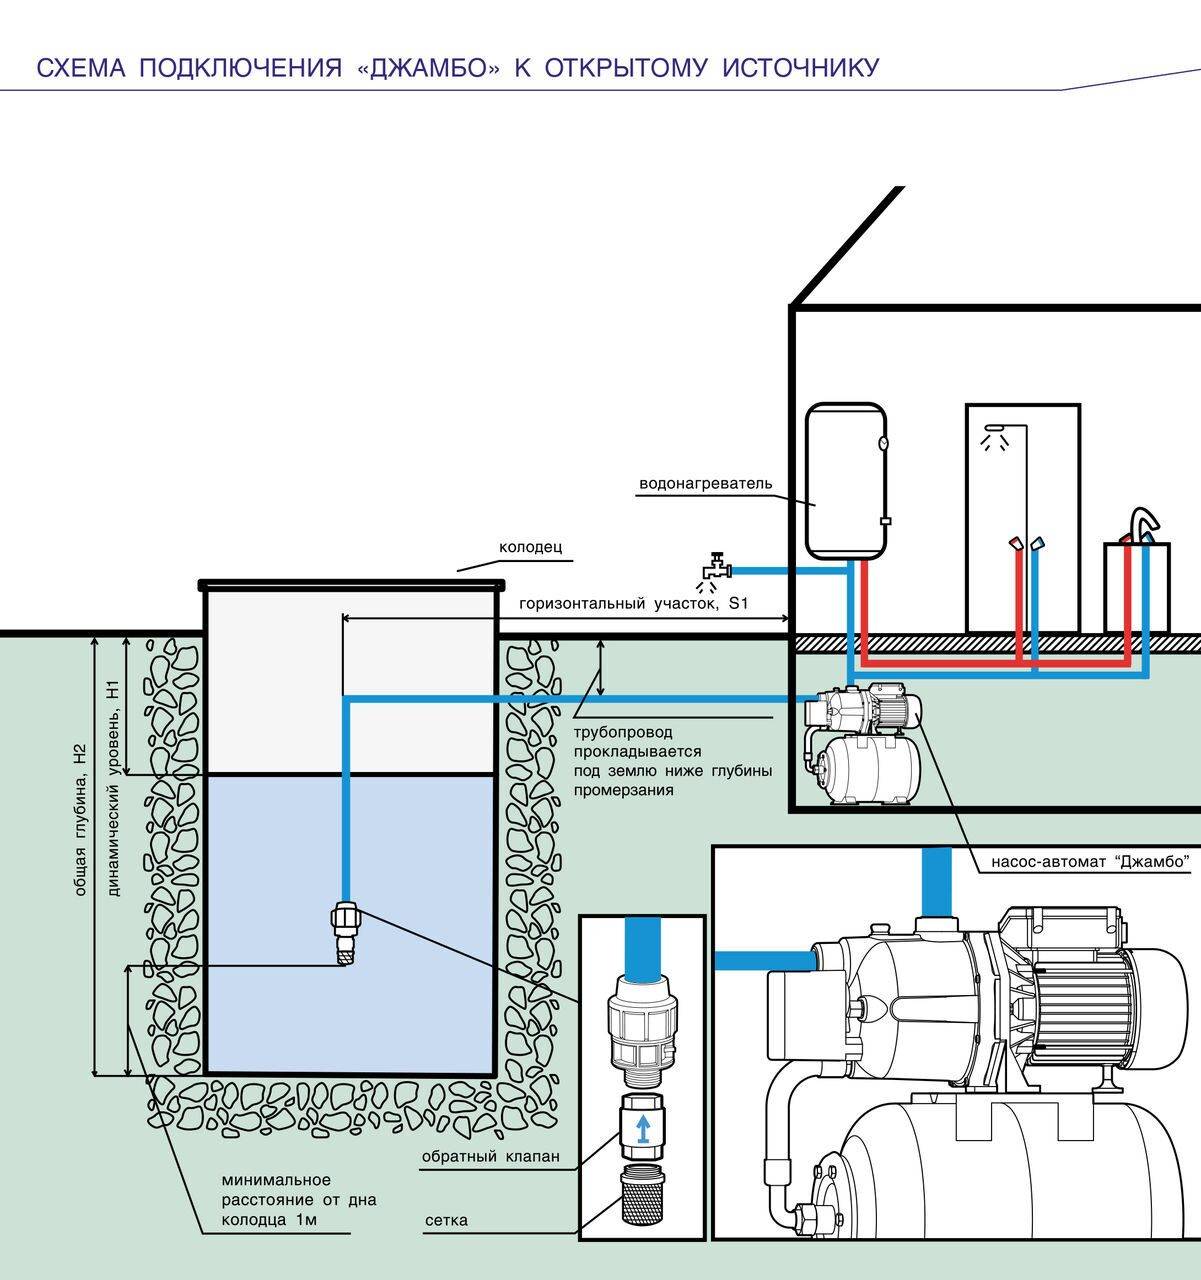 Как выбрать насосную станцию для частного дома – правила выбора водонасосной станции